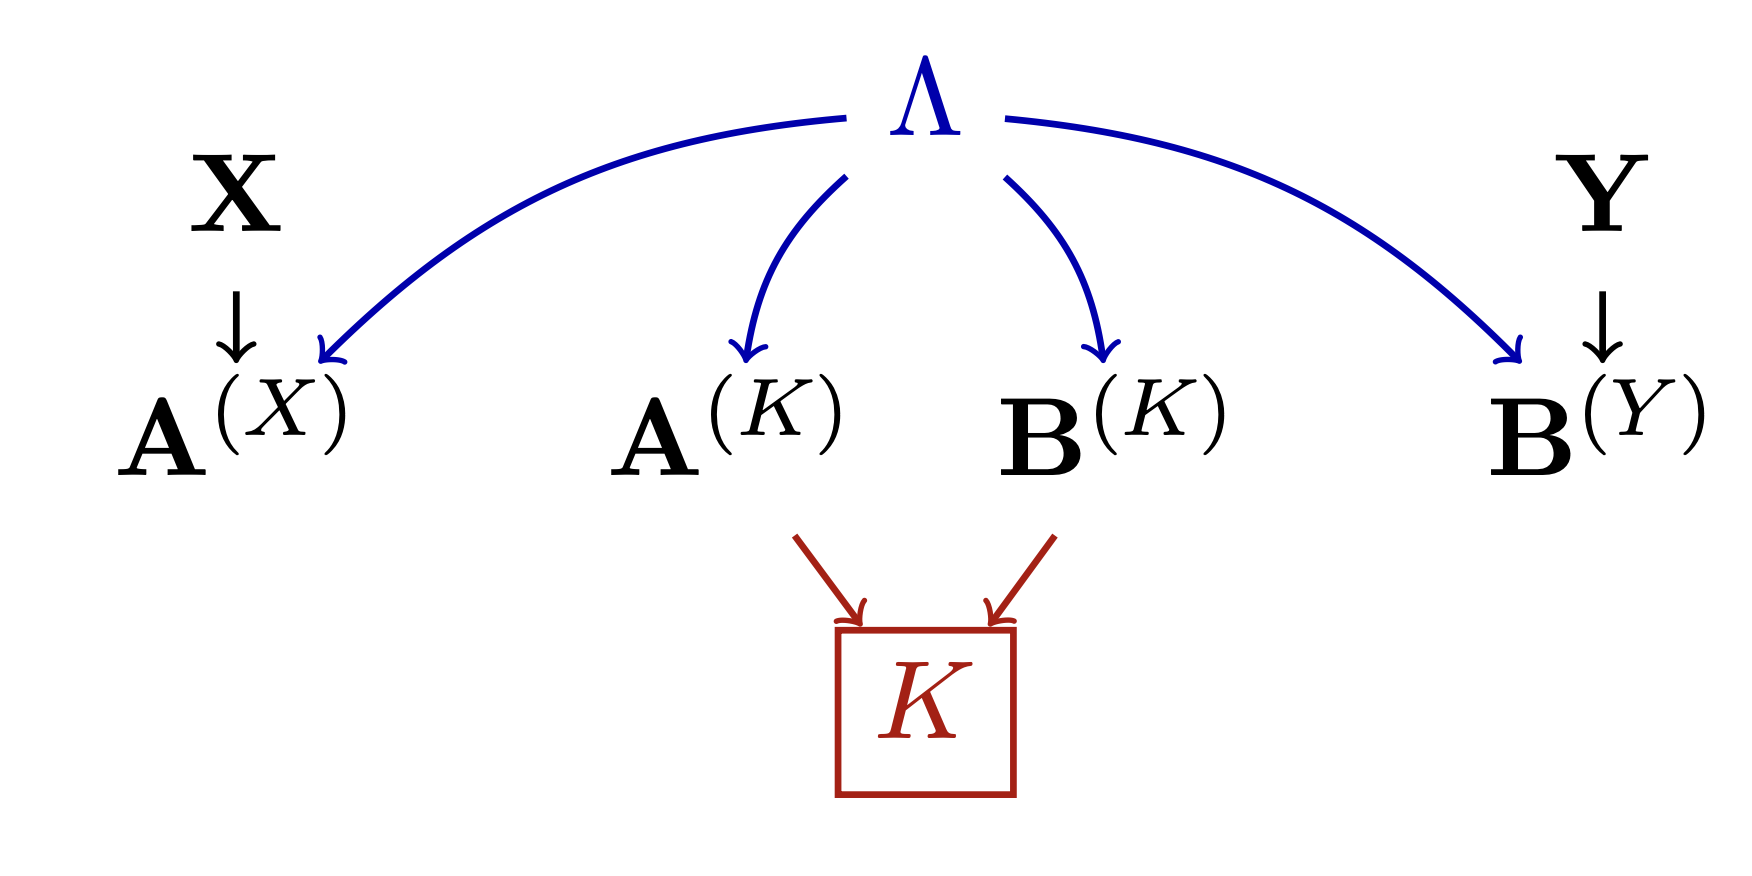 Extending the fair sampling assumption using causal diagrams